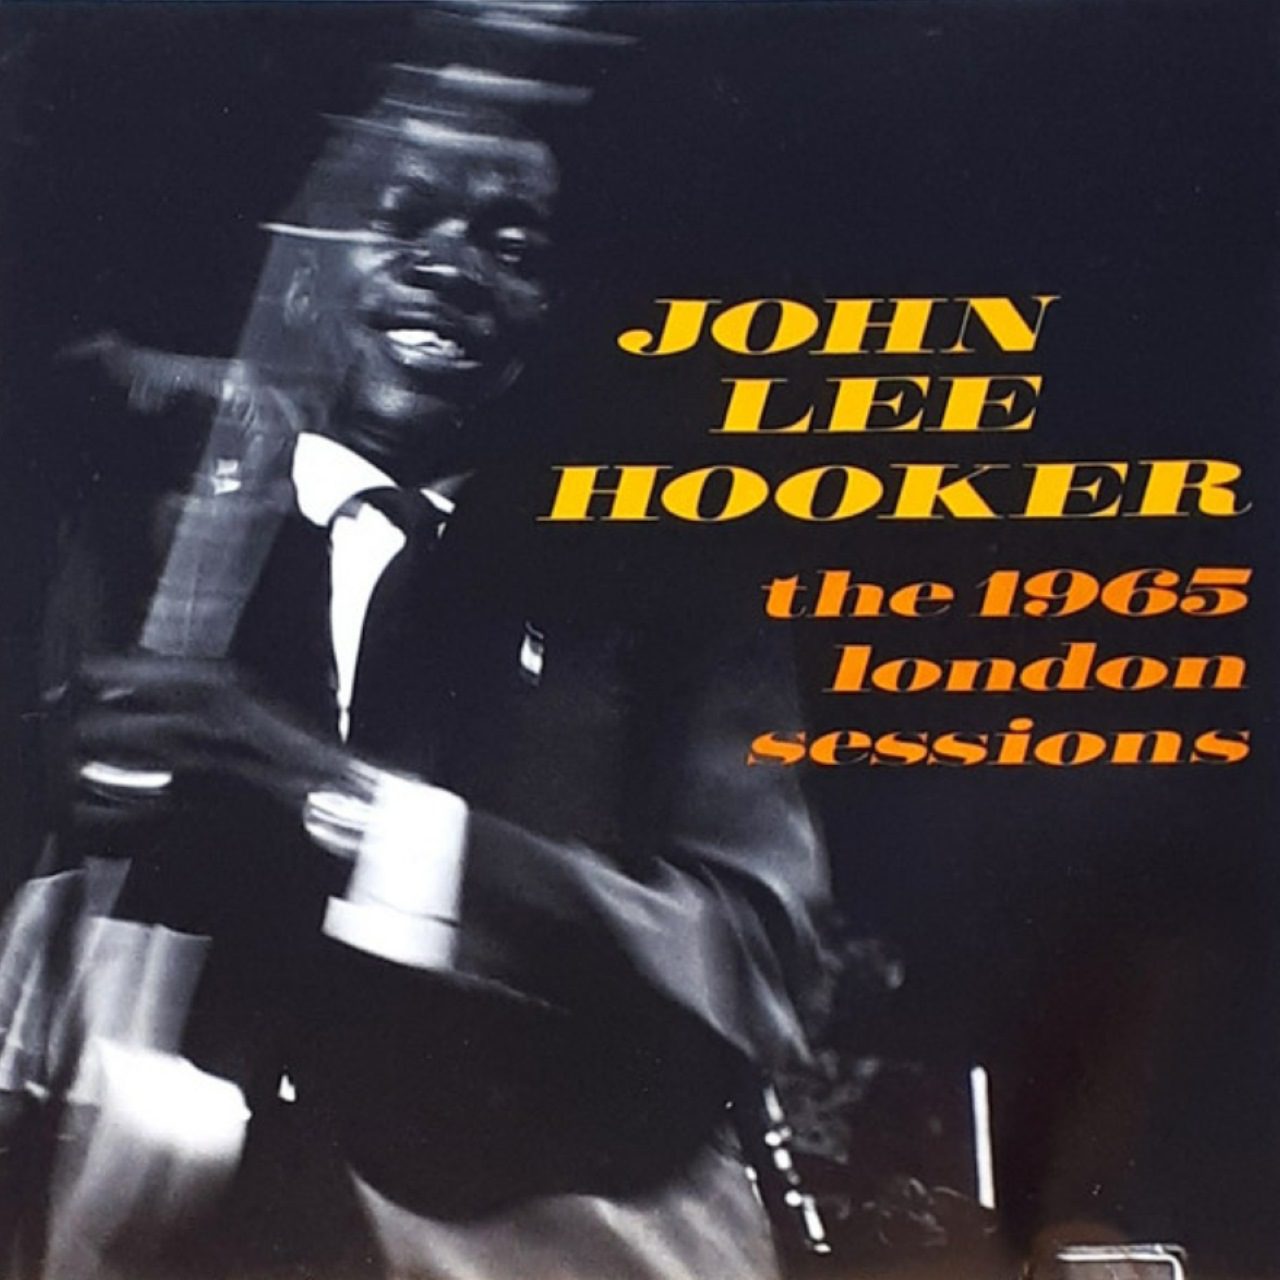 John Lee Hooker – The 1965 London Sessions cover album